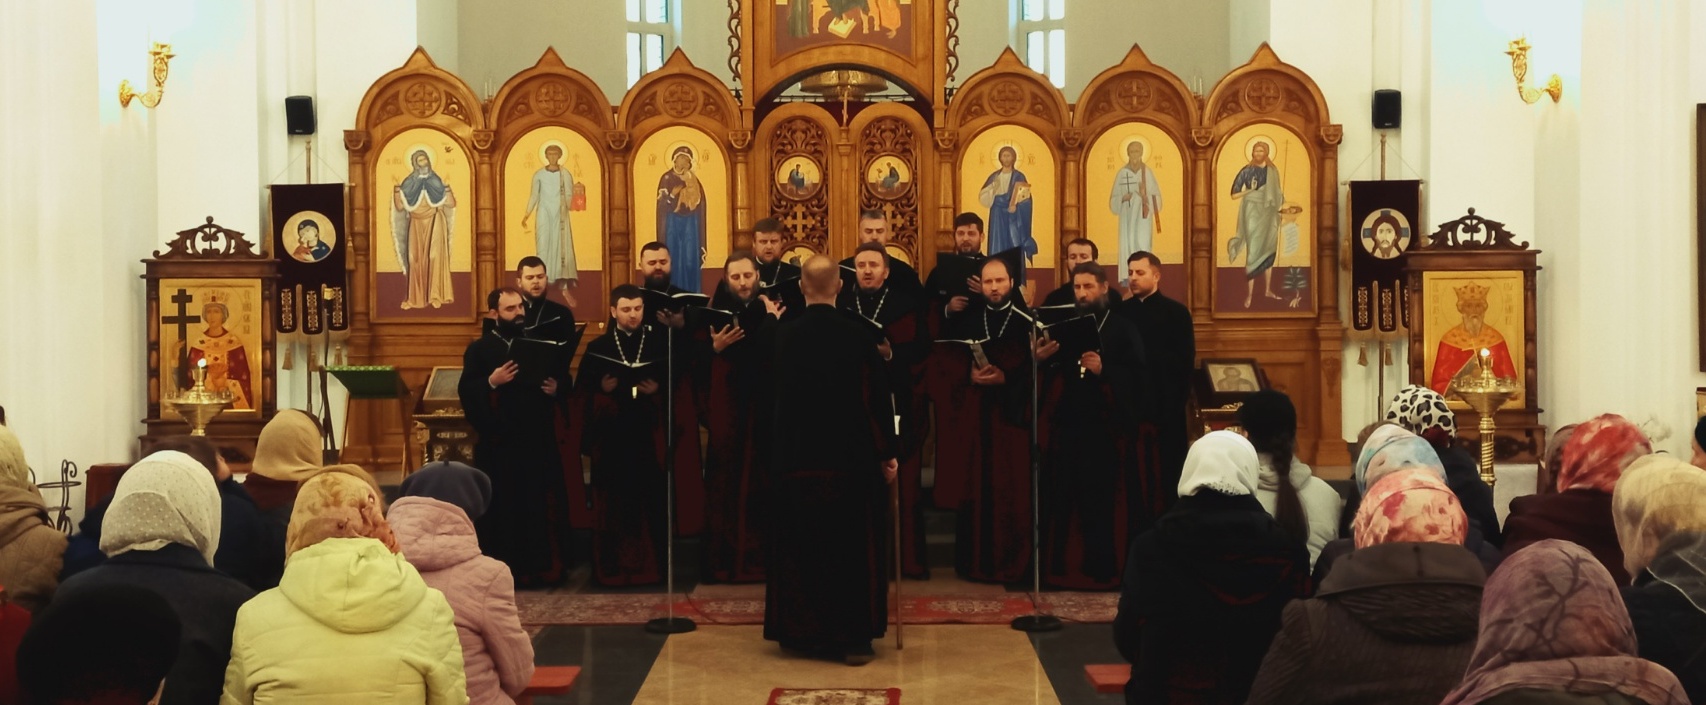 Состоялся концерт хора духовенства гродненской епархии в нашем храмеПодробнее